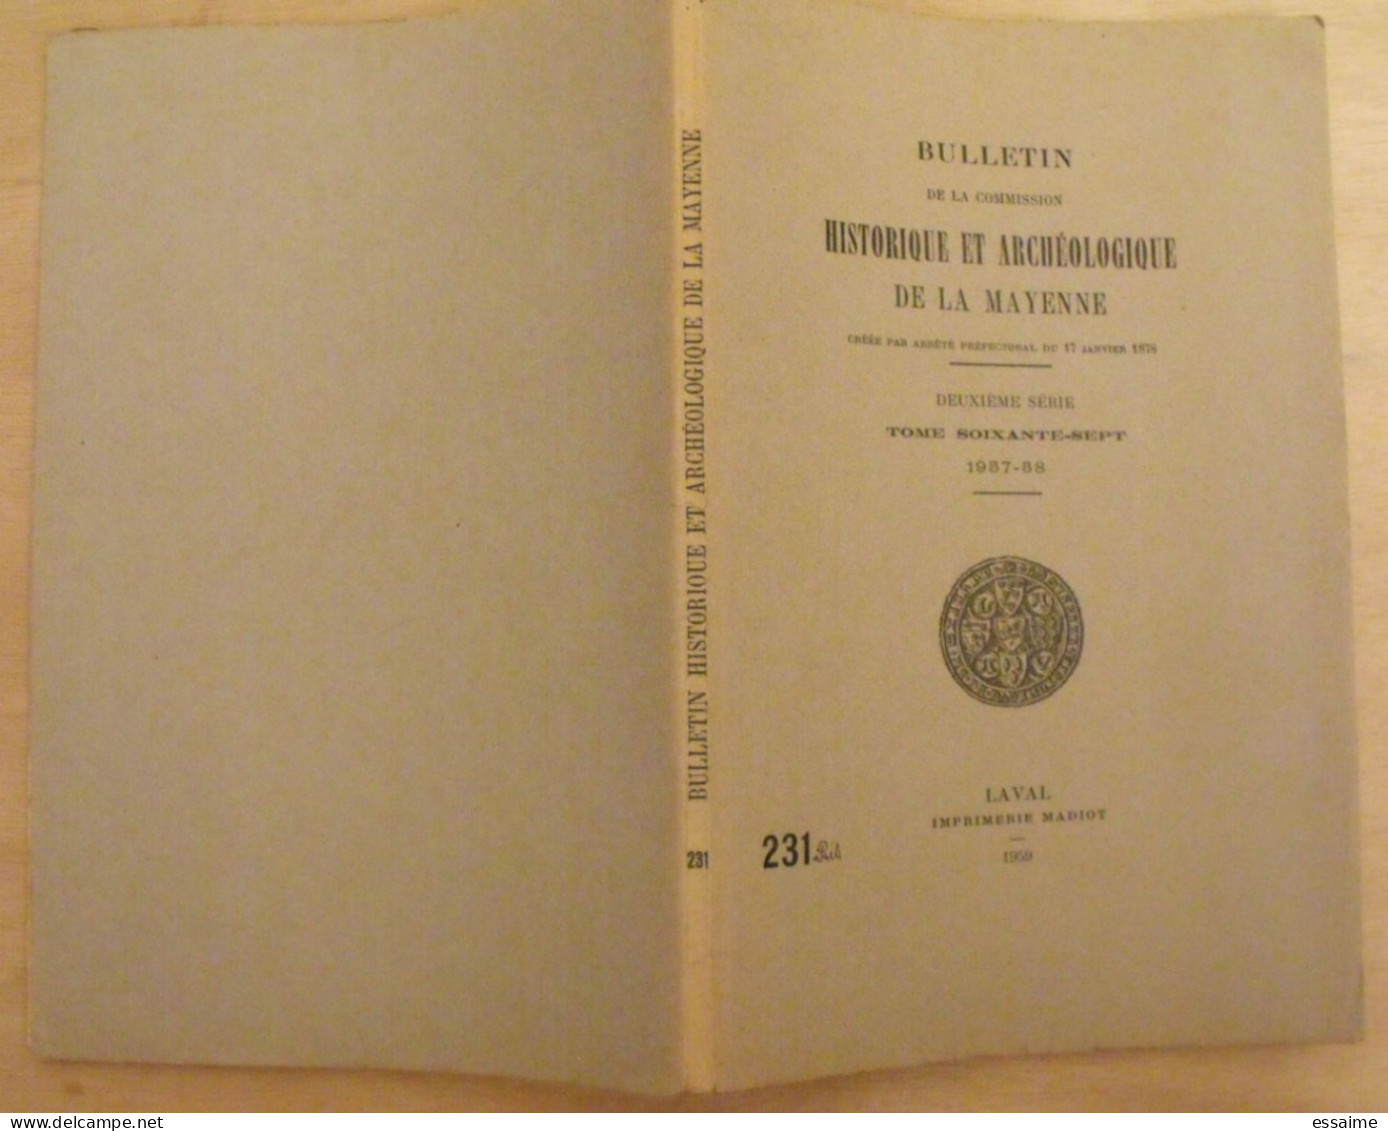 Bulletin Historique Et Archéologique De La Mayenne. 1957-58, Tome LXVII-231bis. Laval Chateau-Gontier. Goupil. - Pays De Loire